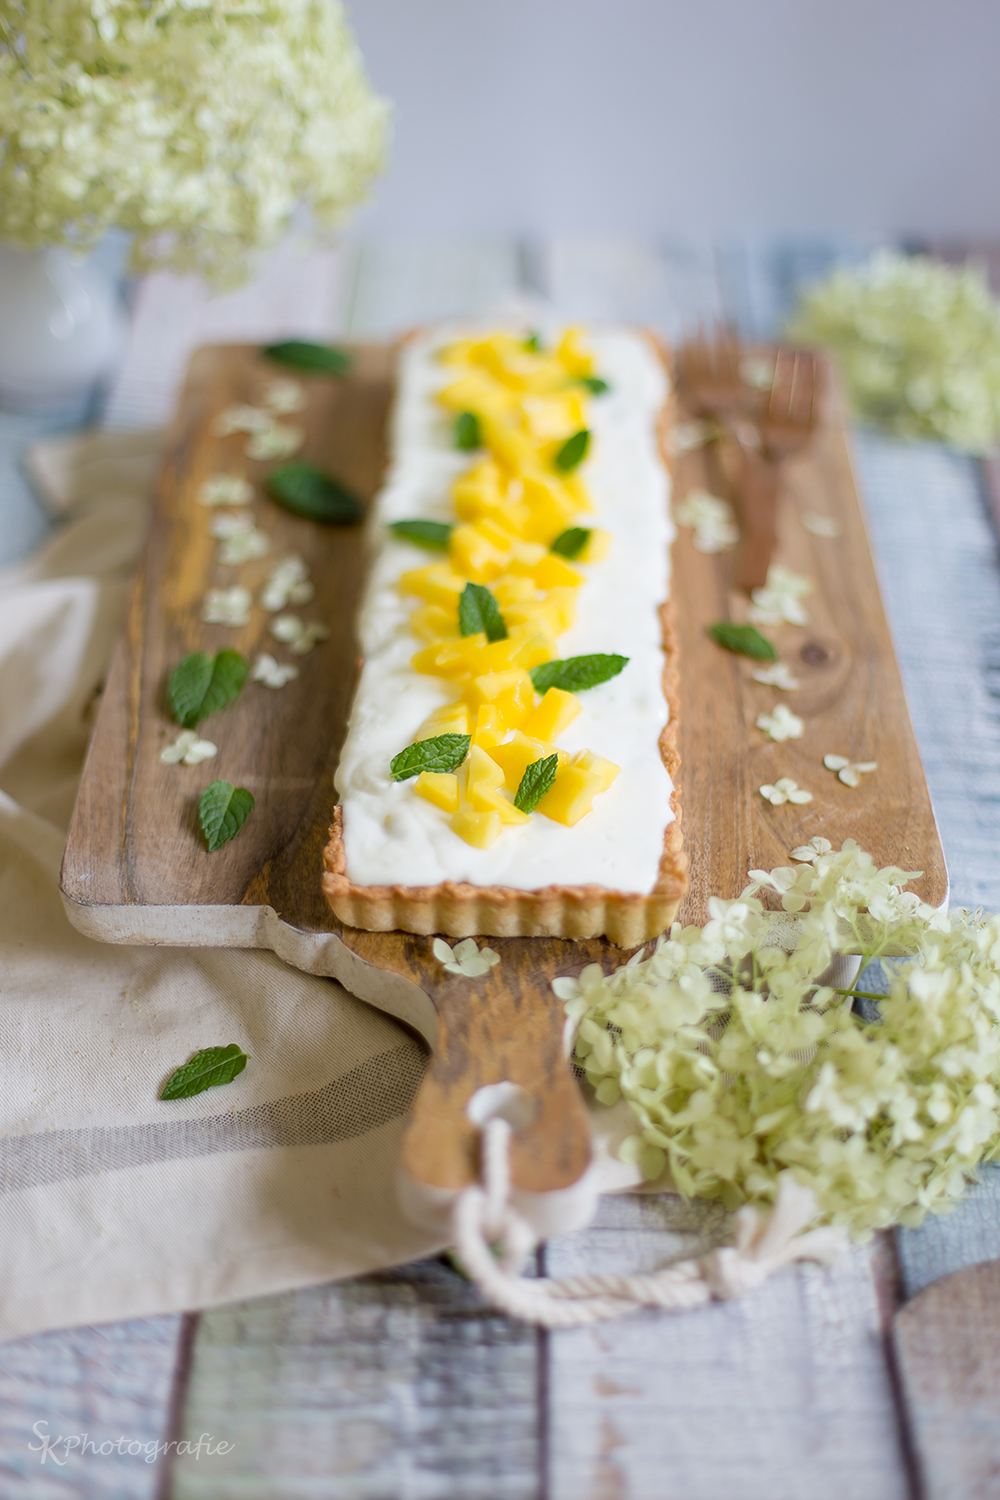 Für sonnige Sommertage: Mango-Tarte mit frischer Minze und Joghurt ...